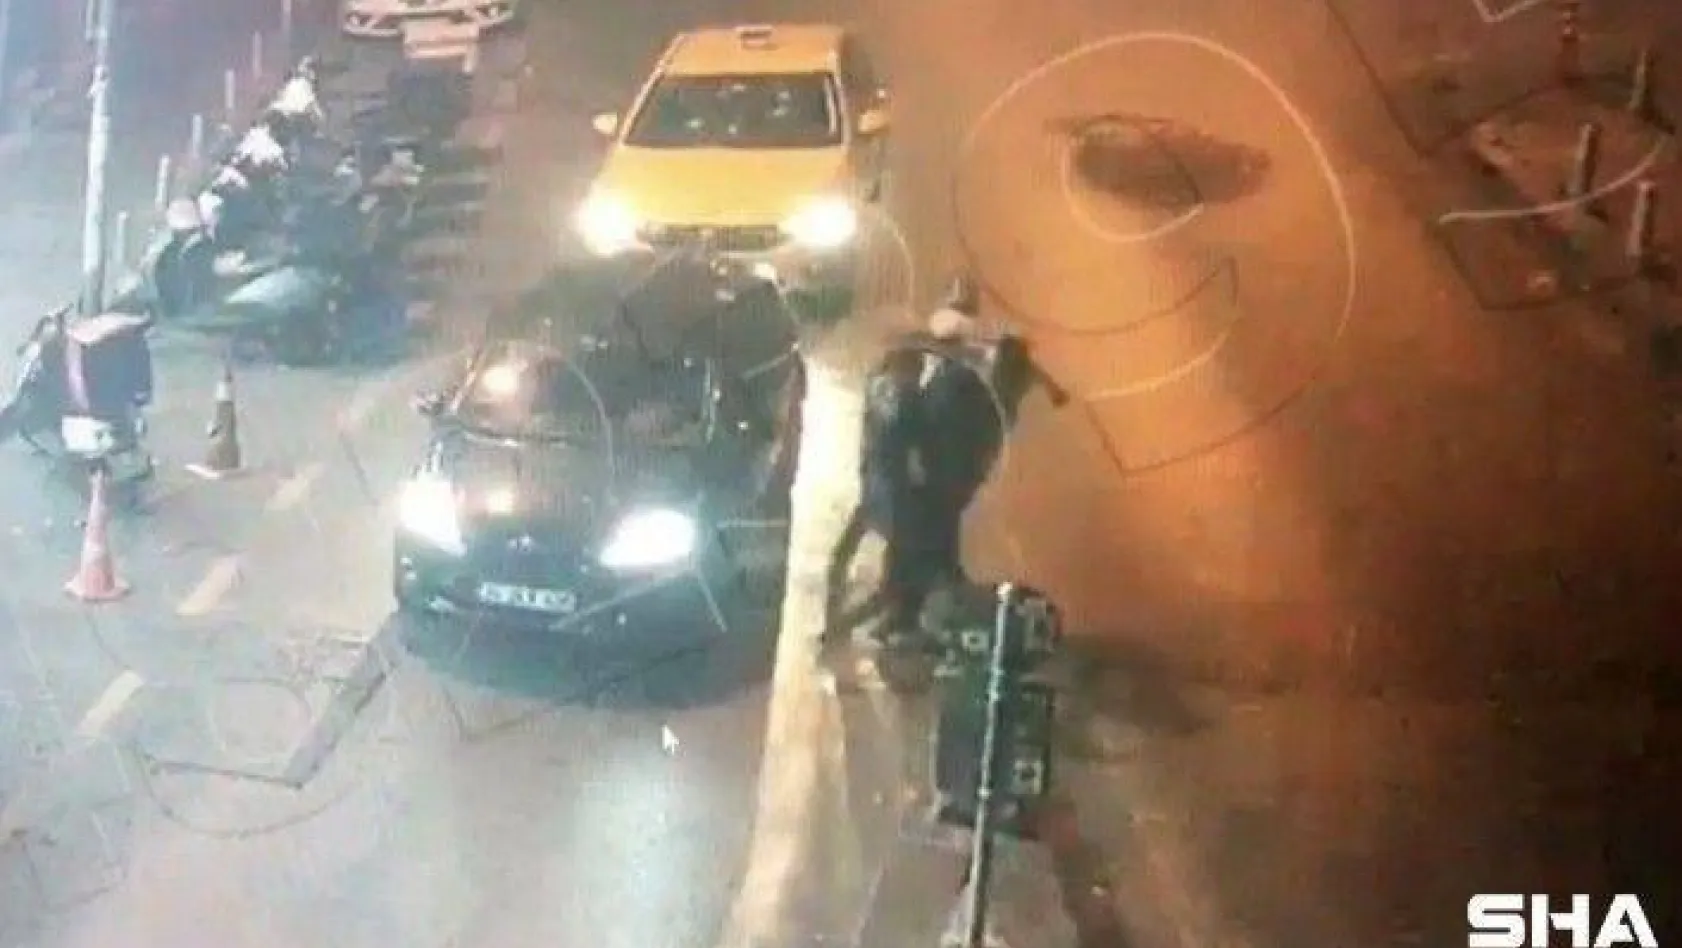 (Özel) İstanbul'da dehşet anları kamerada: Silahla dizlerinden vurup yerde tekmelediler